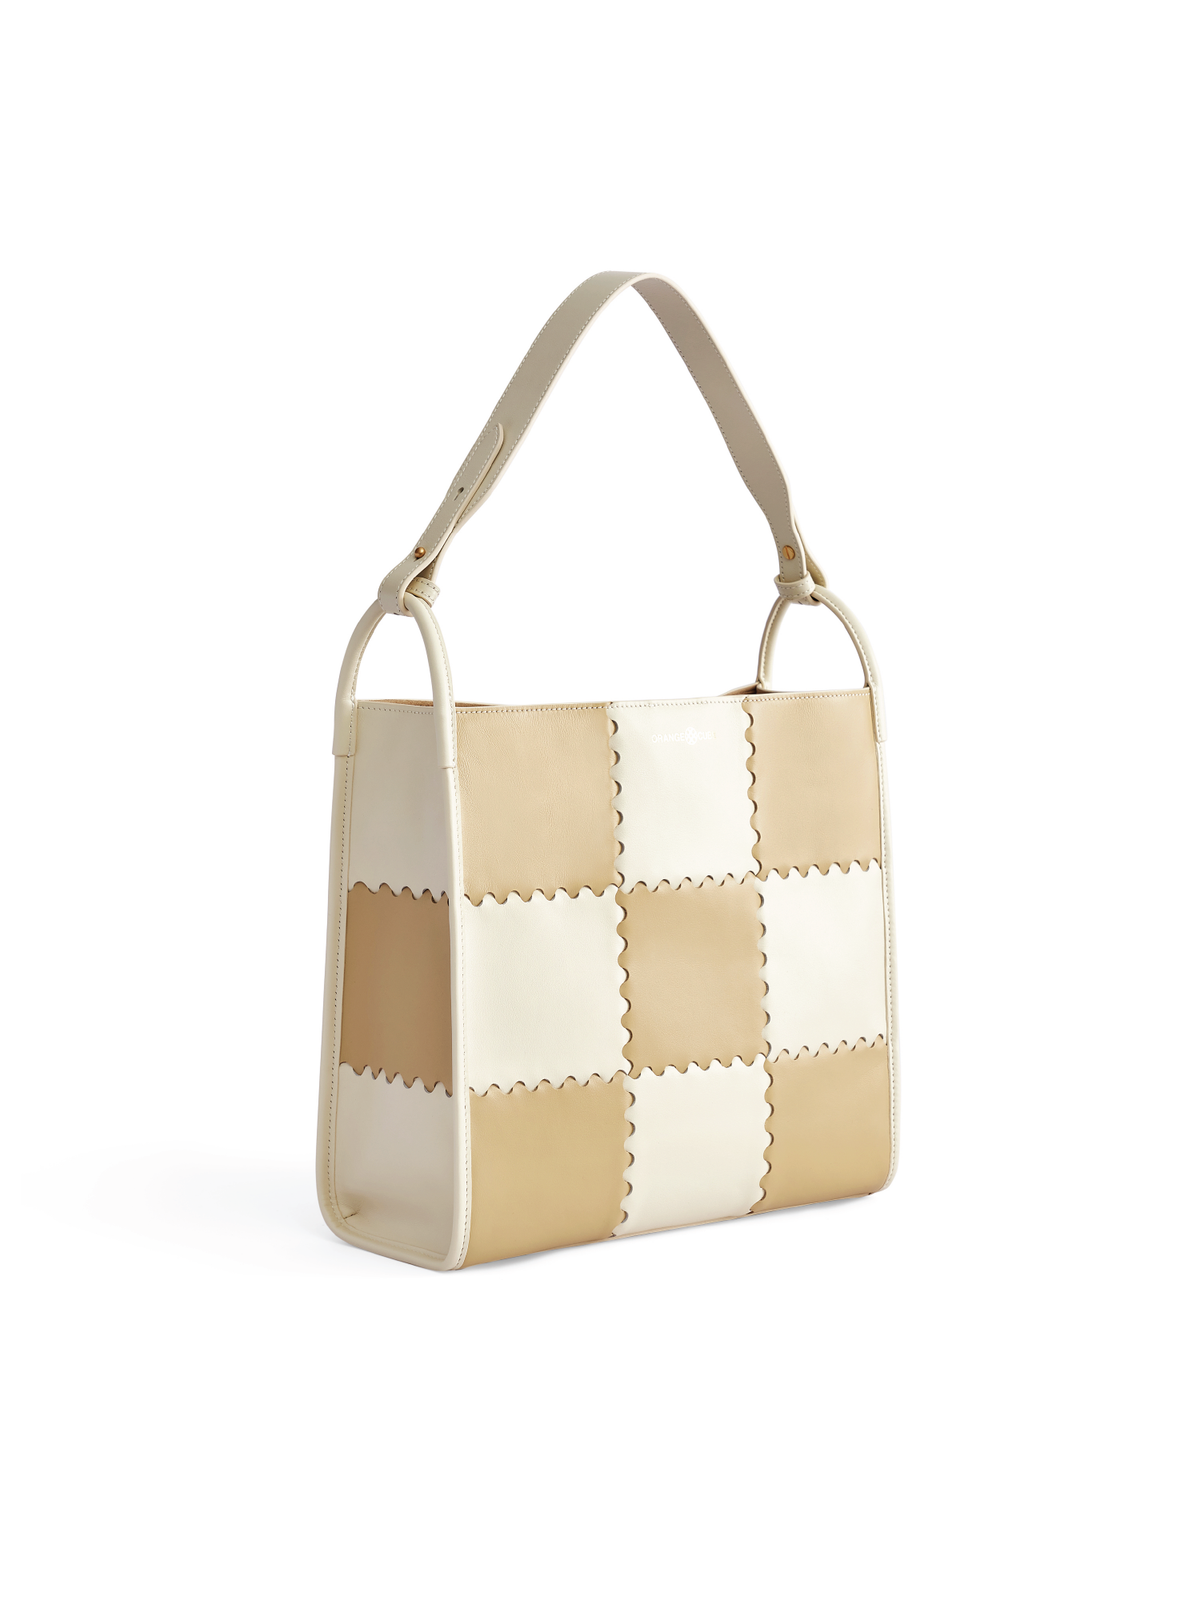 Square Stitch Tote Bag- White/ Light Brown